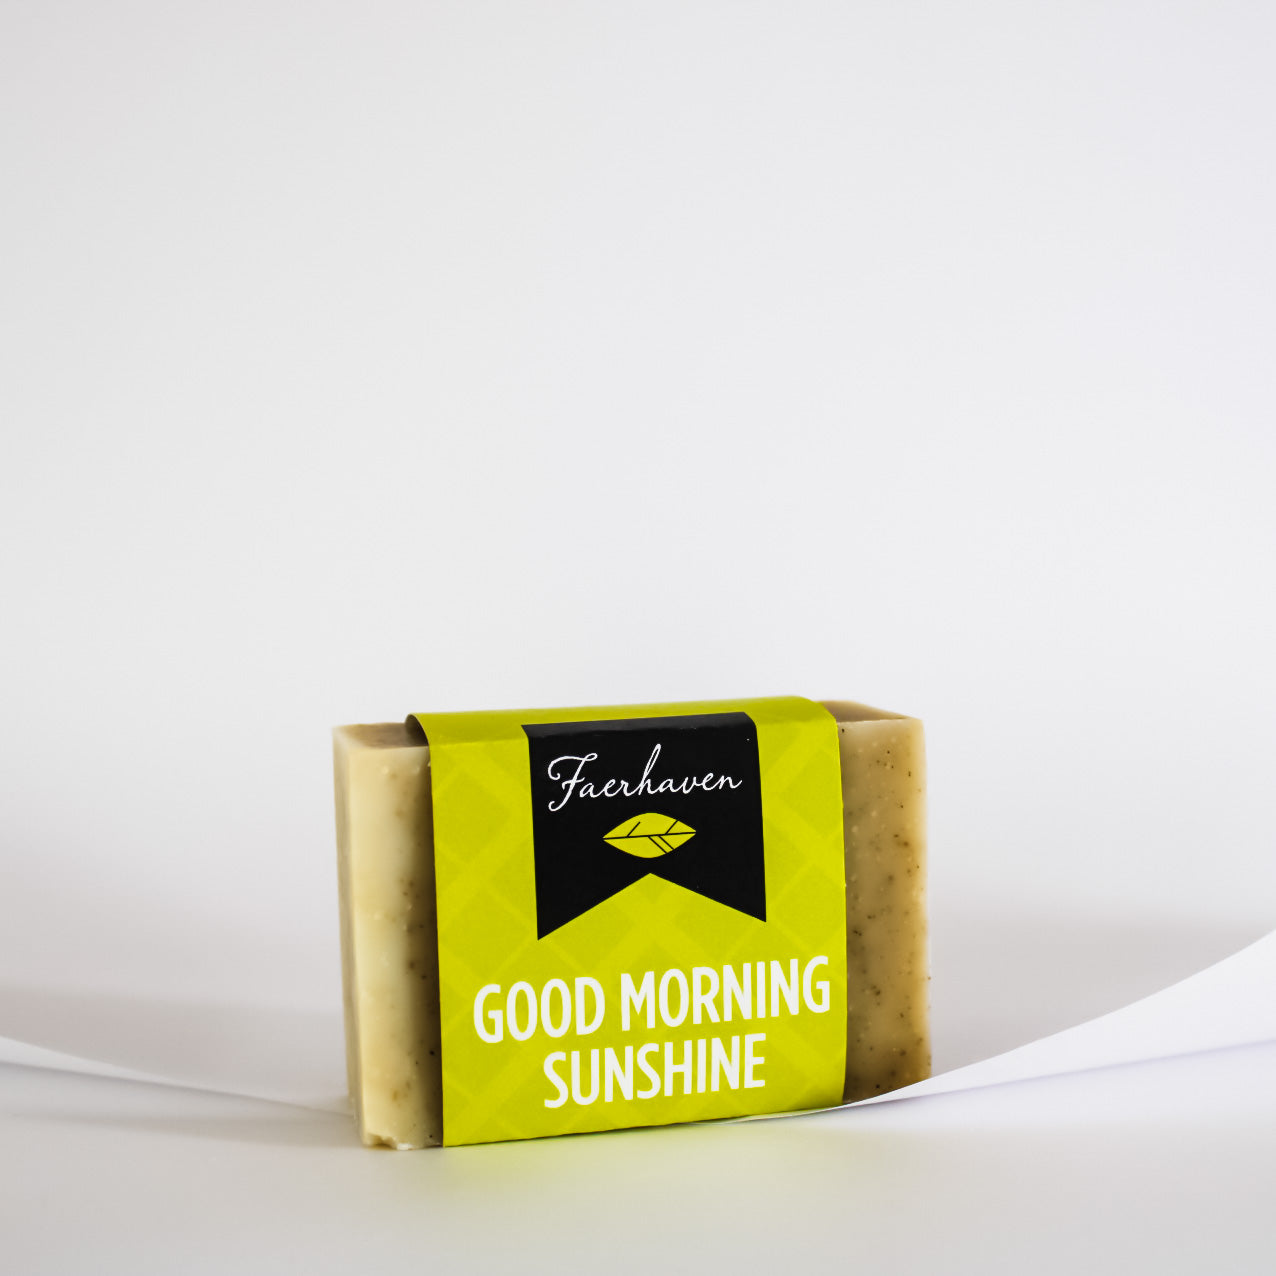 Good Morning Sunshine Bar Soap